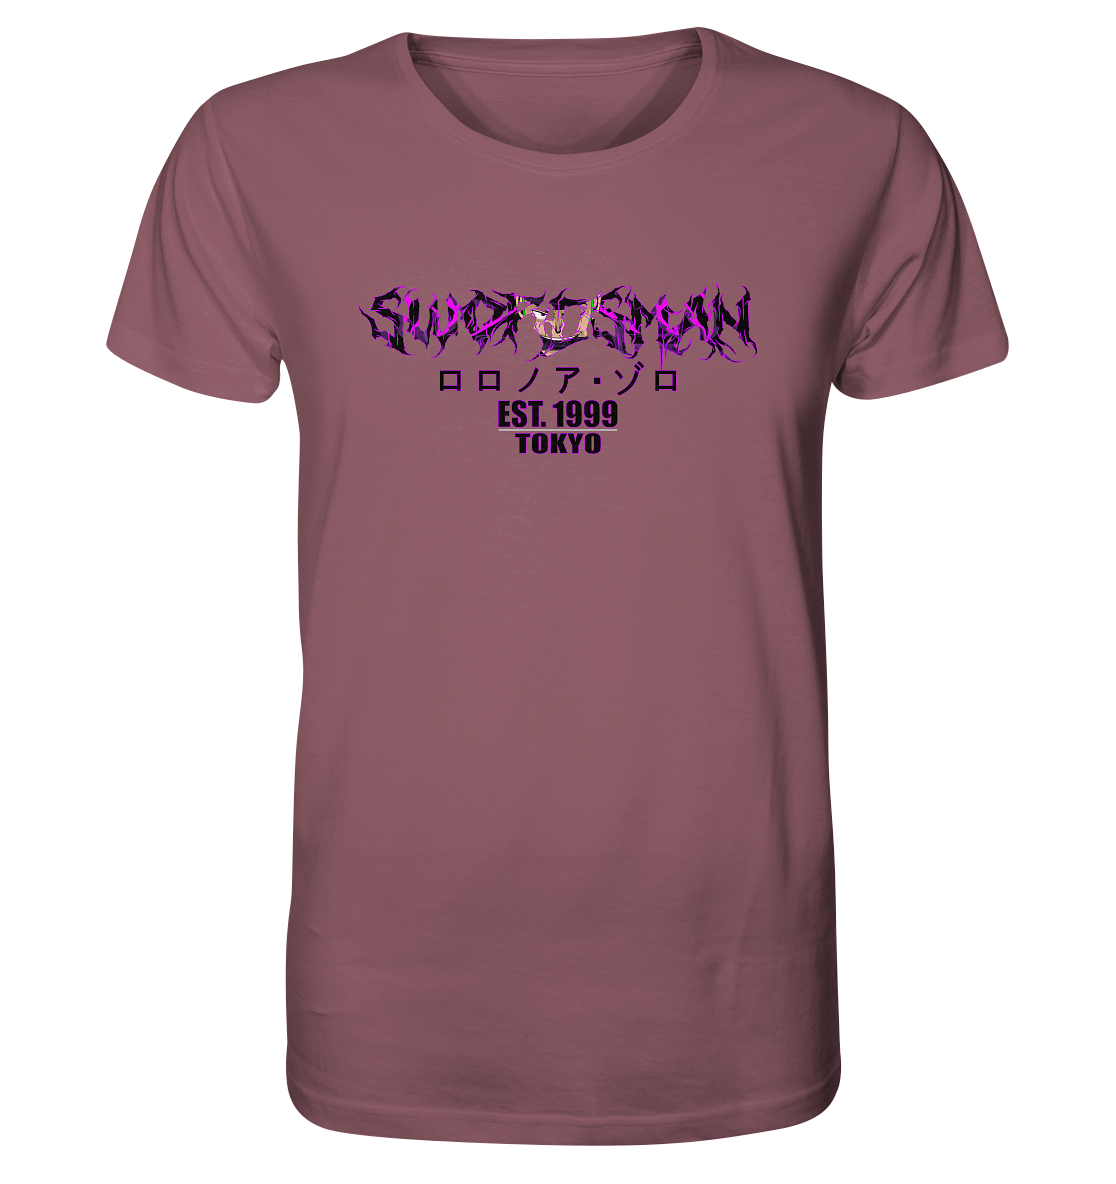 Zoro X Swordsman - Organic Shirt